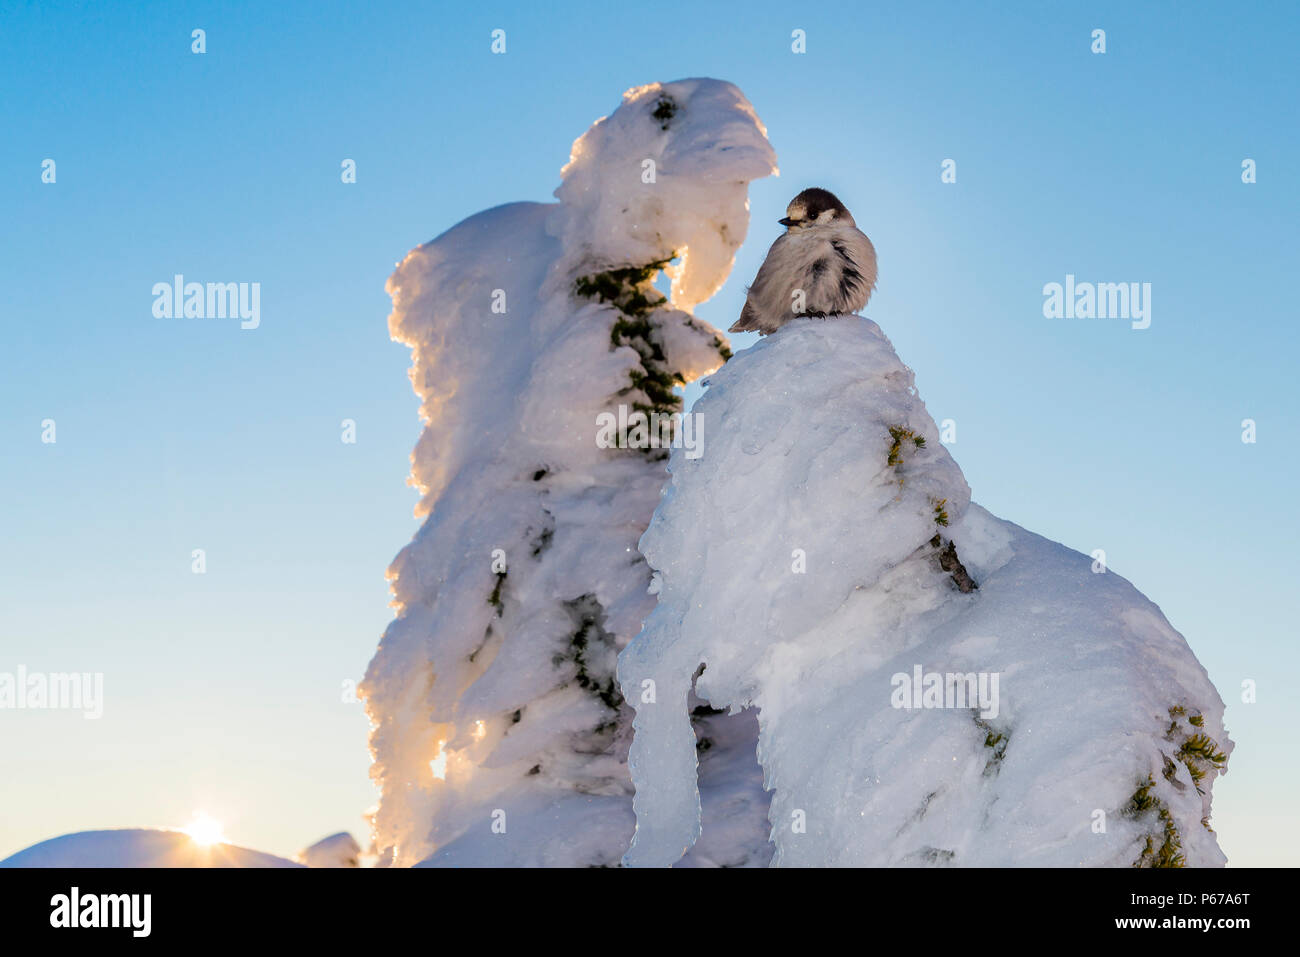 Geai gris sur l'arbre enneigé, Coucher de soleil, hiver, Mount Seymour Provincial Park, N. Vancouver, Colombie-Britannique, Canada Banque D'Images